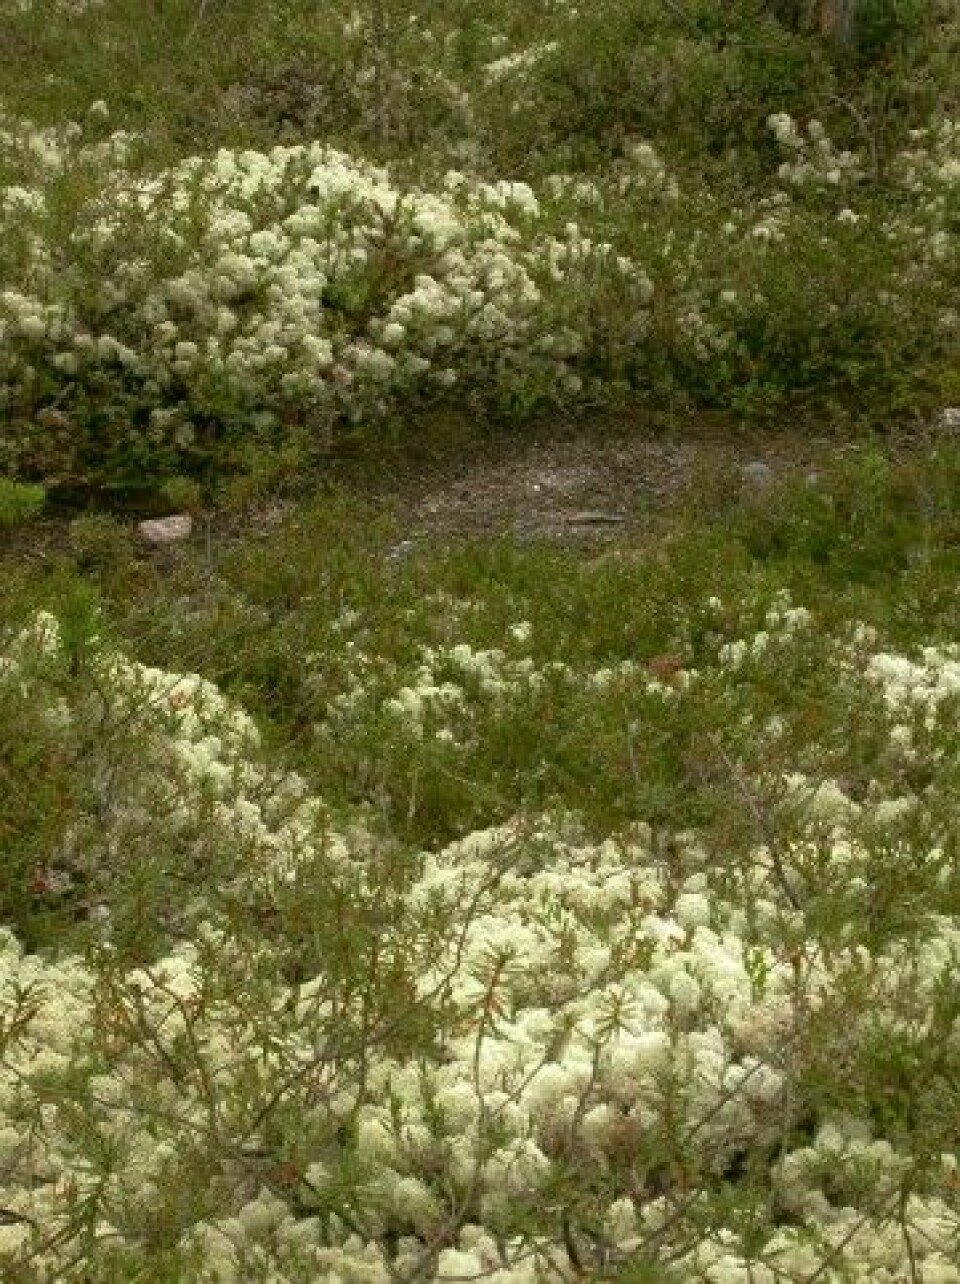 Laven kvitkrull bugner i områder med lite til moderat beite. Her vokser den innimellom busker av finnmarkspors. (Foto: Jarle W. Bjerke)